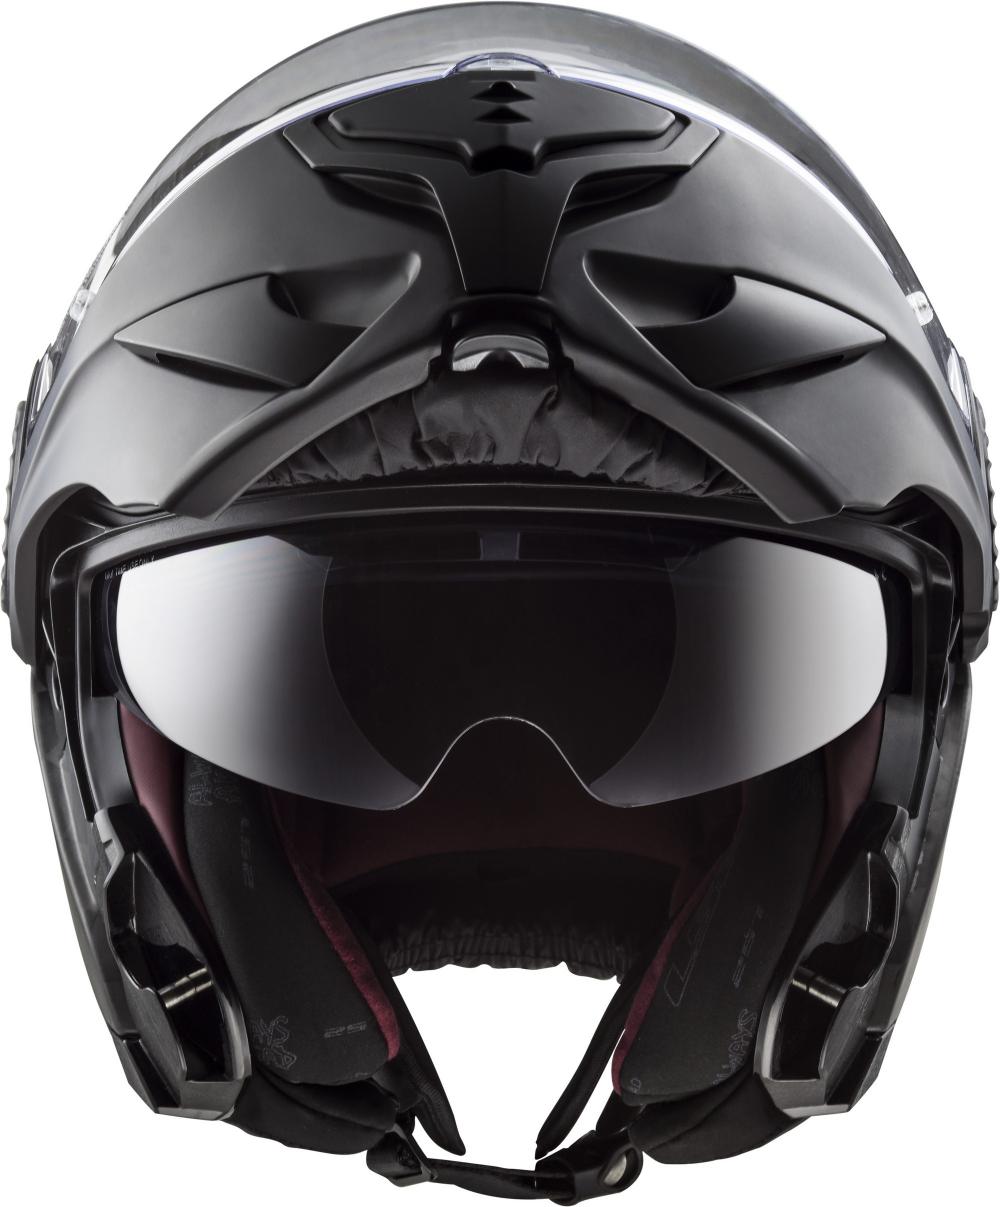 Il casco modulare in carbonio LS2 Vortex FF313 - Motociclismo